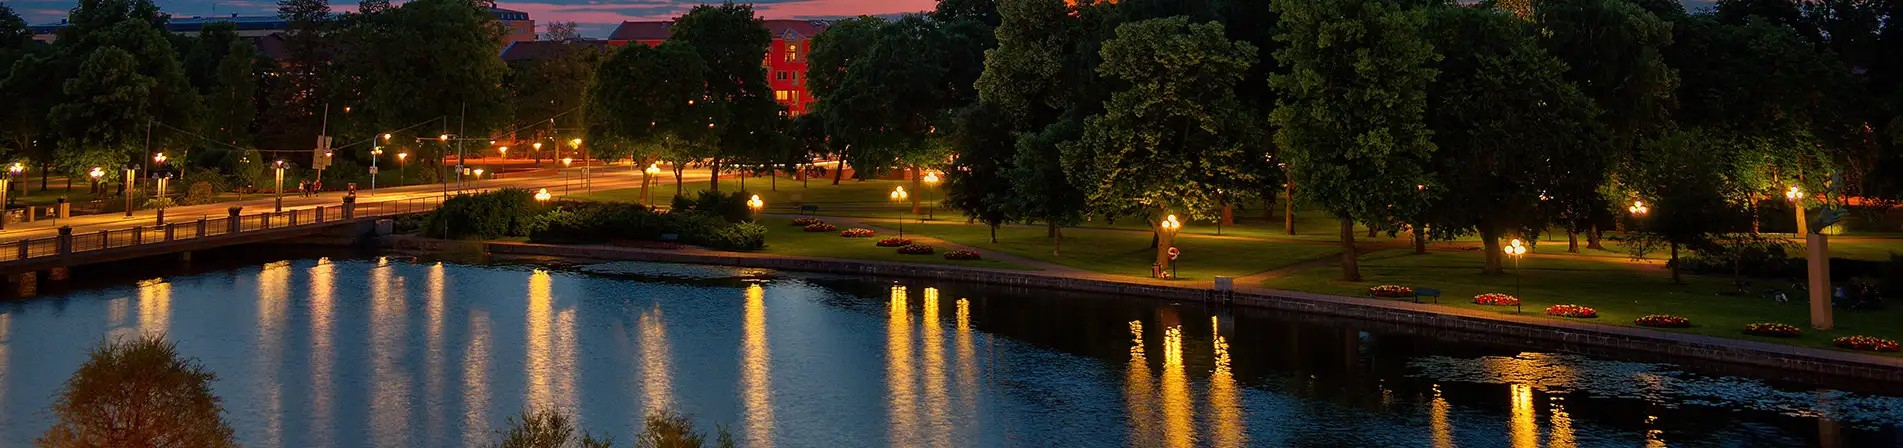 Natt vid Strömsholmen i Eskilstuna